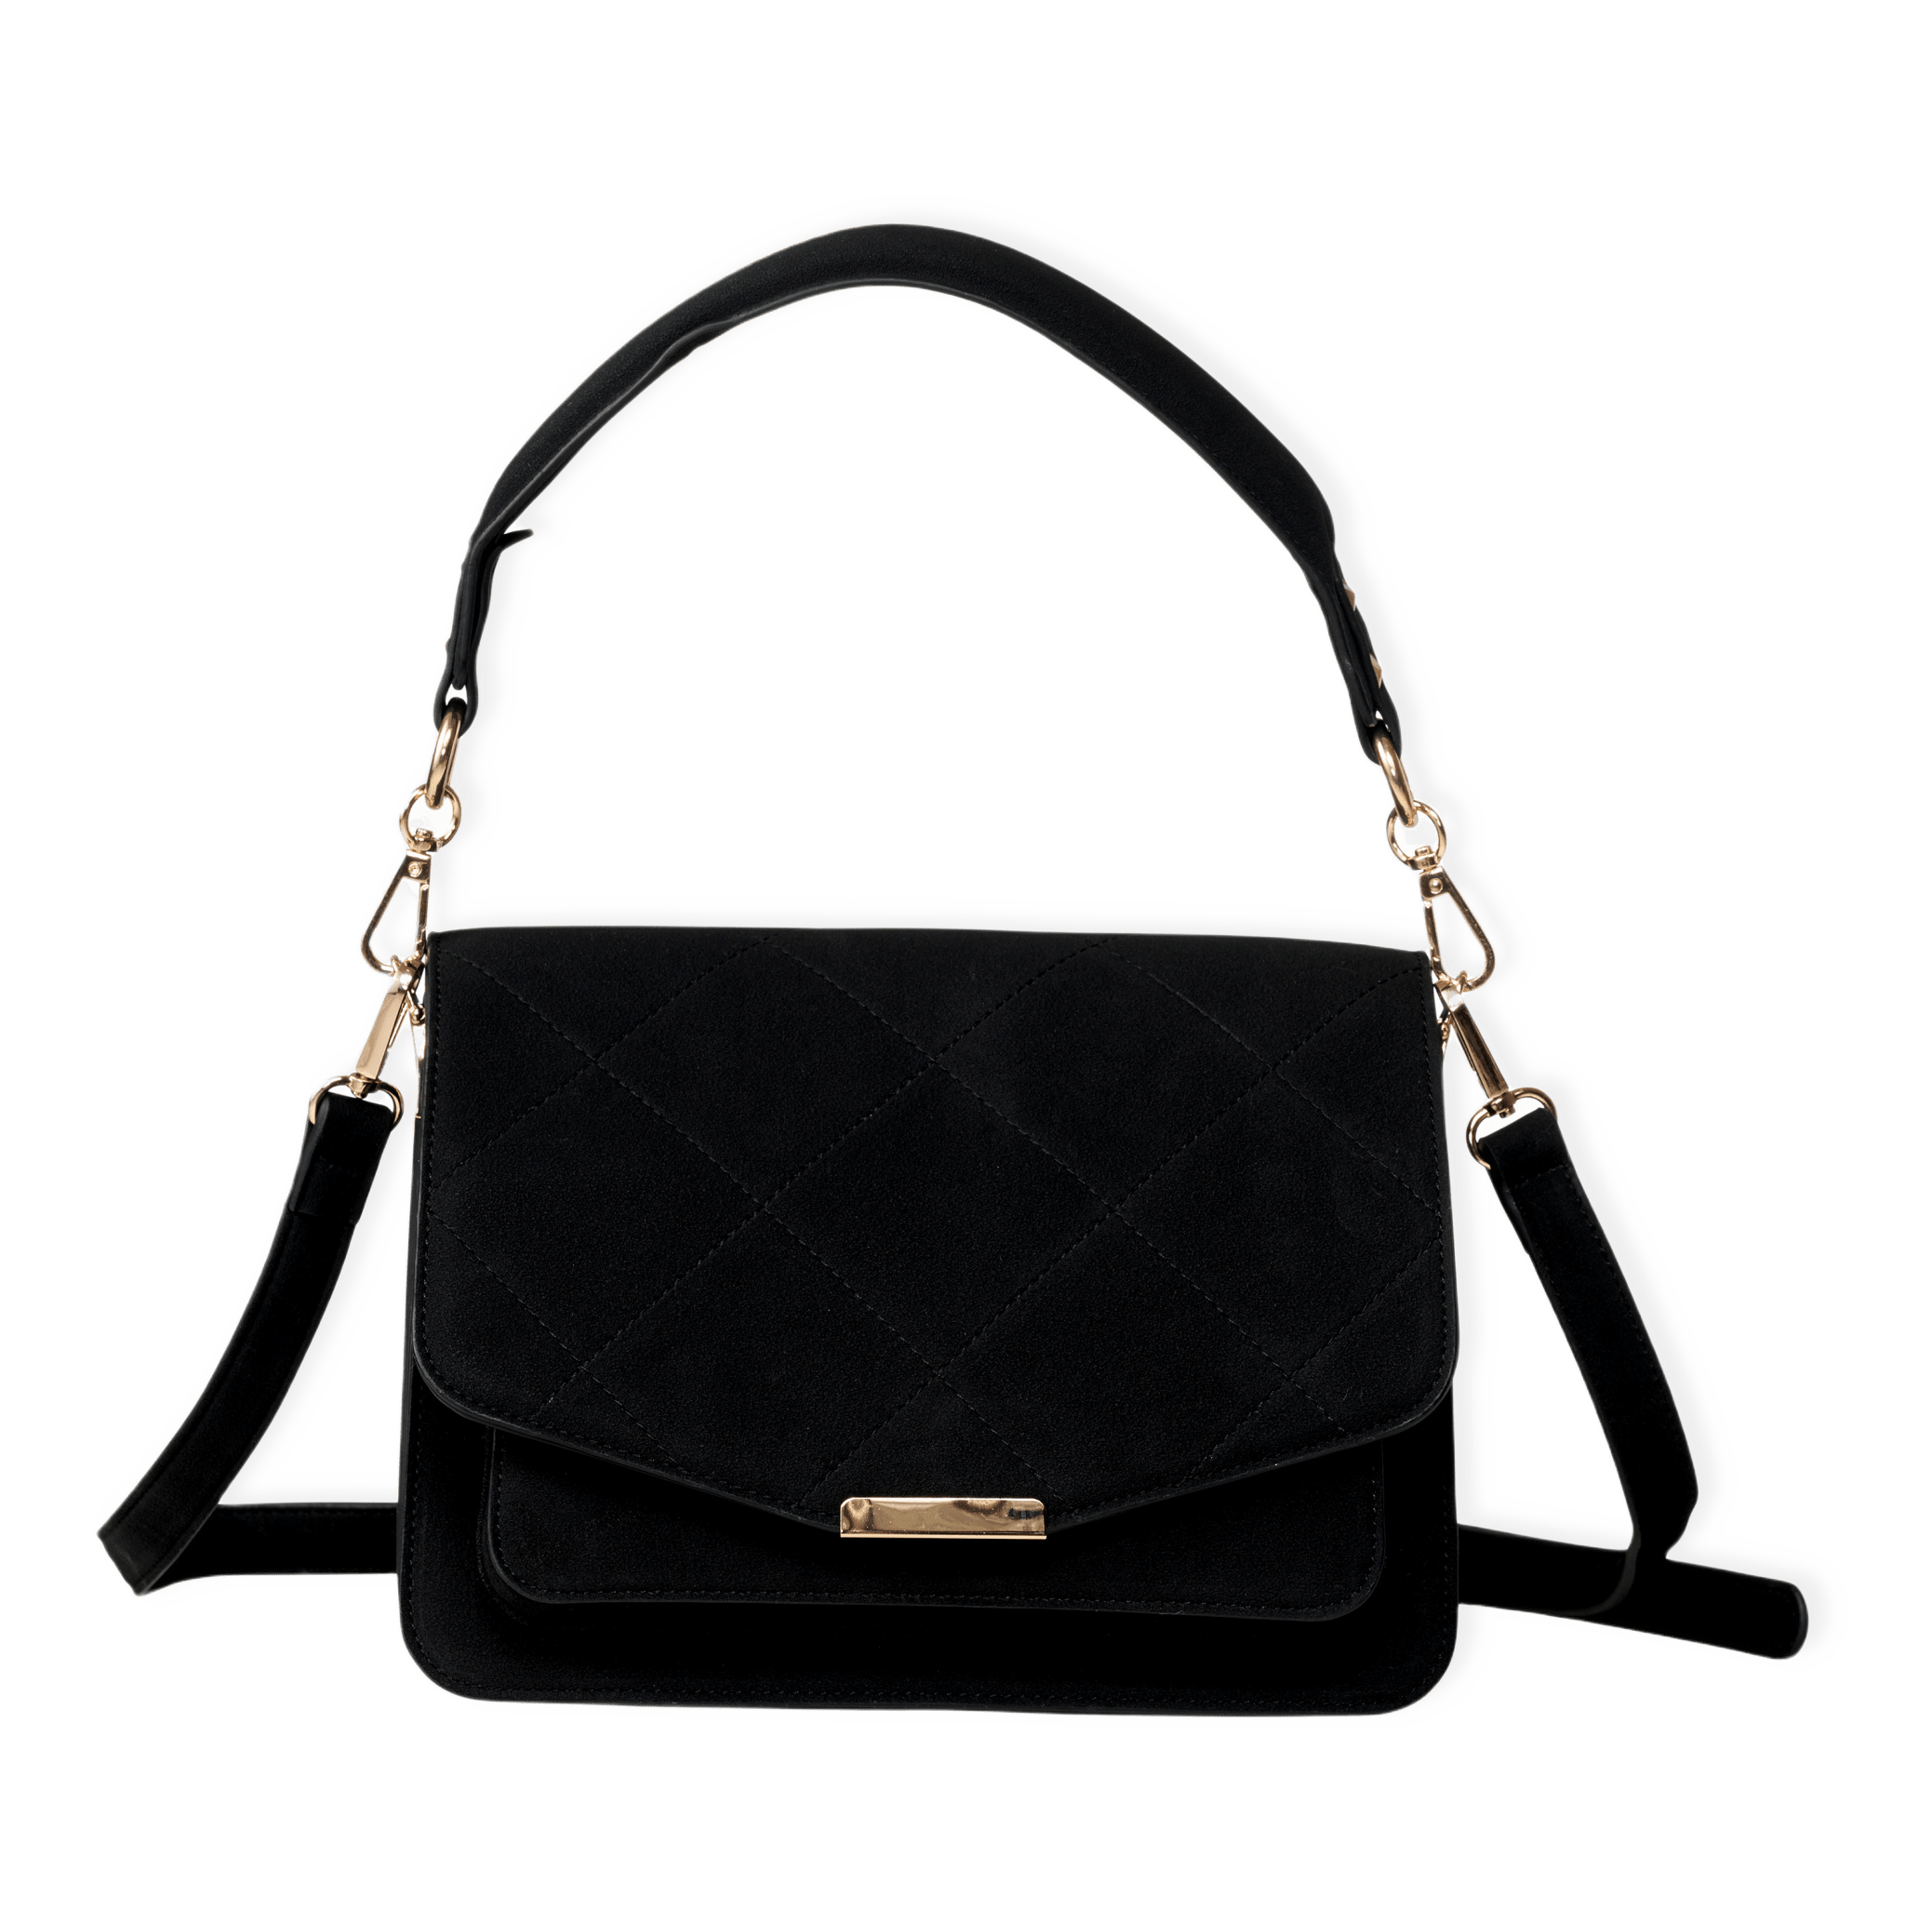 Blanca Multi Compartment Bag - Black Suede från Noella